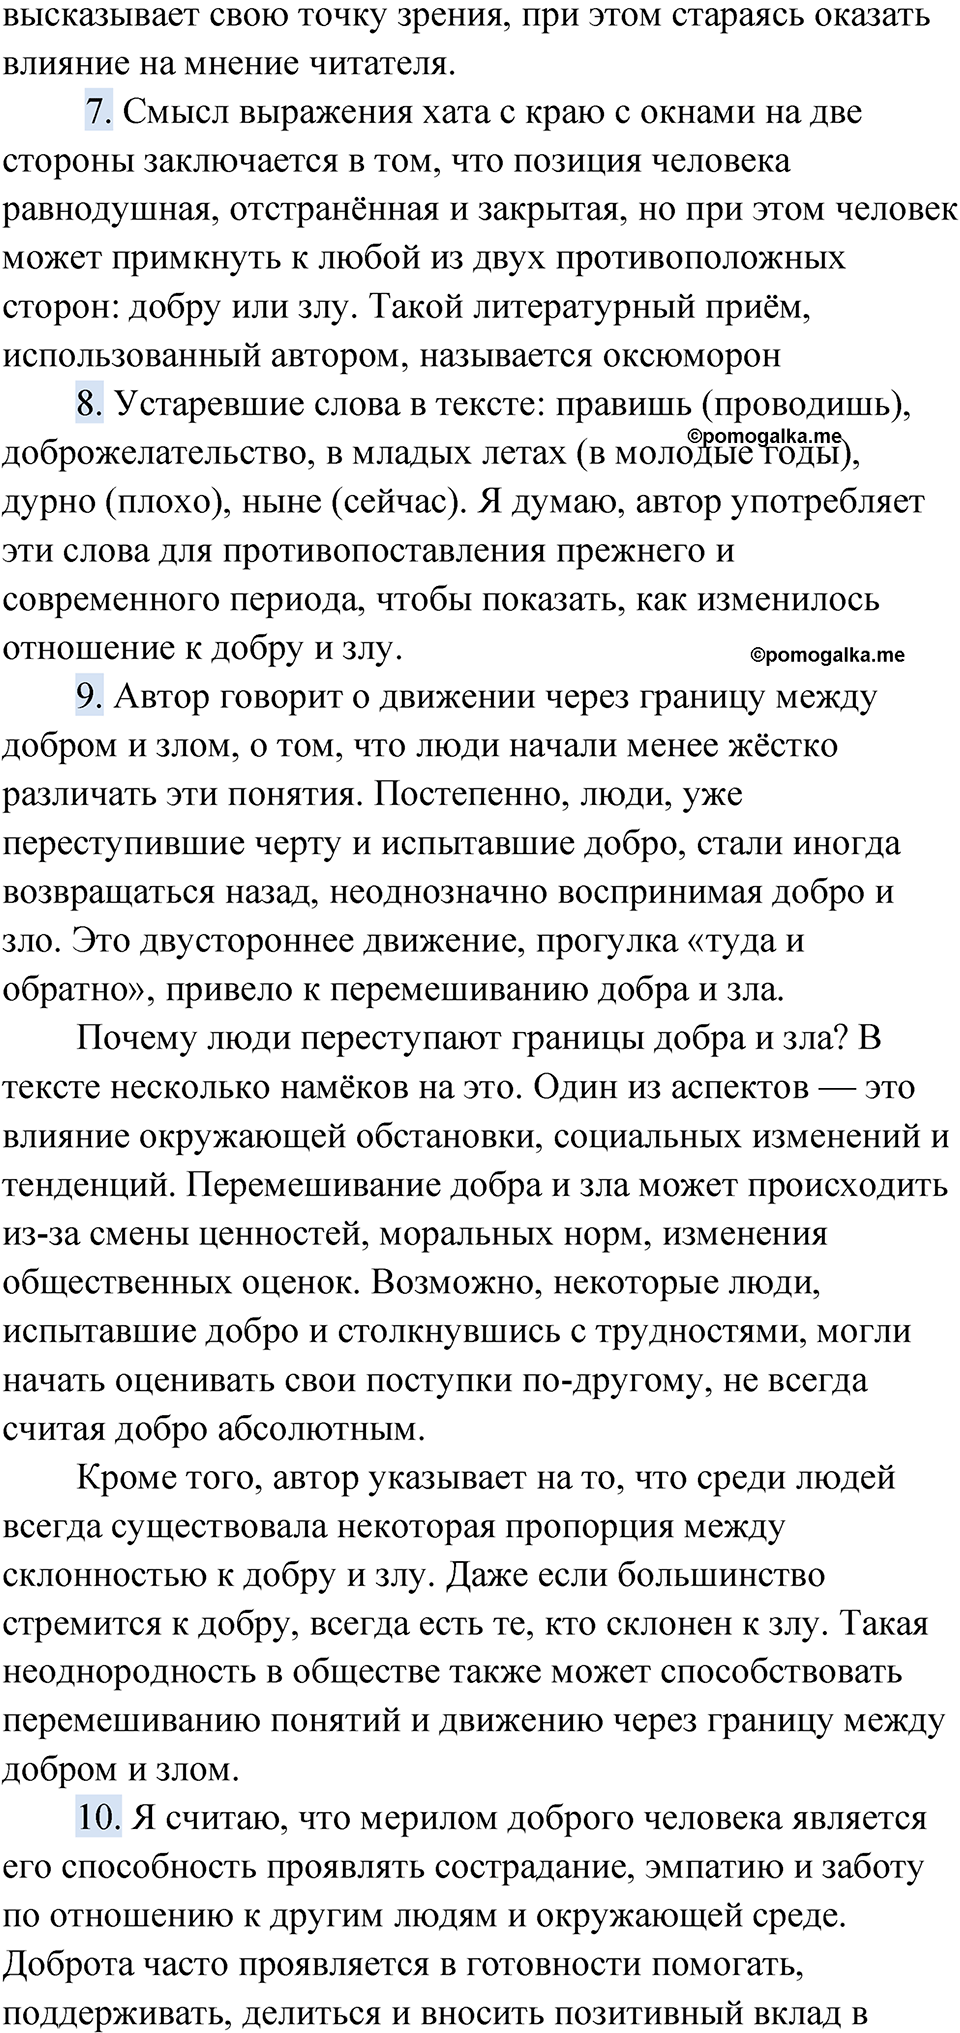 страница 189 упражнение 146 русский язык 9 класс Быстрова 1 часть 2022 год